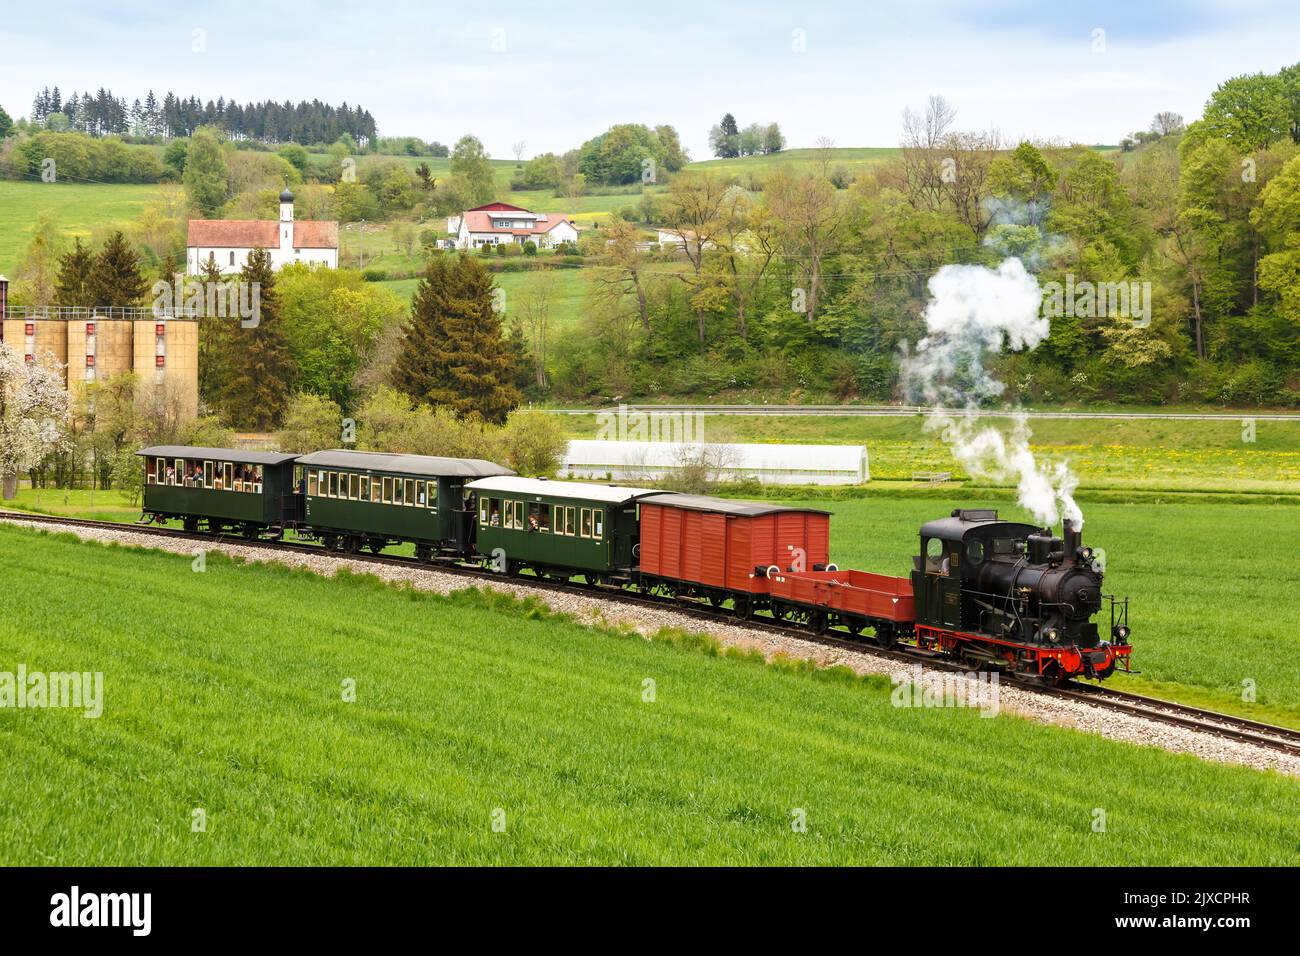 Haertsfeld Schaettere steam train locomotive museum railway rail in Iggenhausen Germany Stock Photo